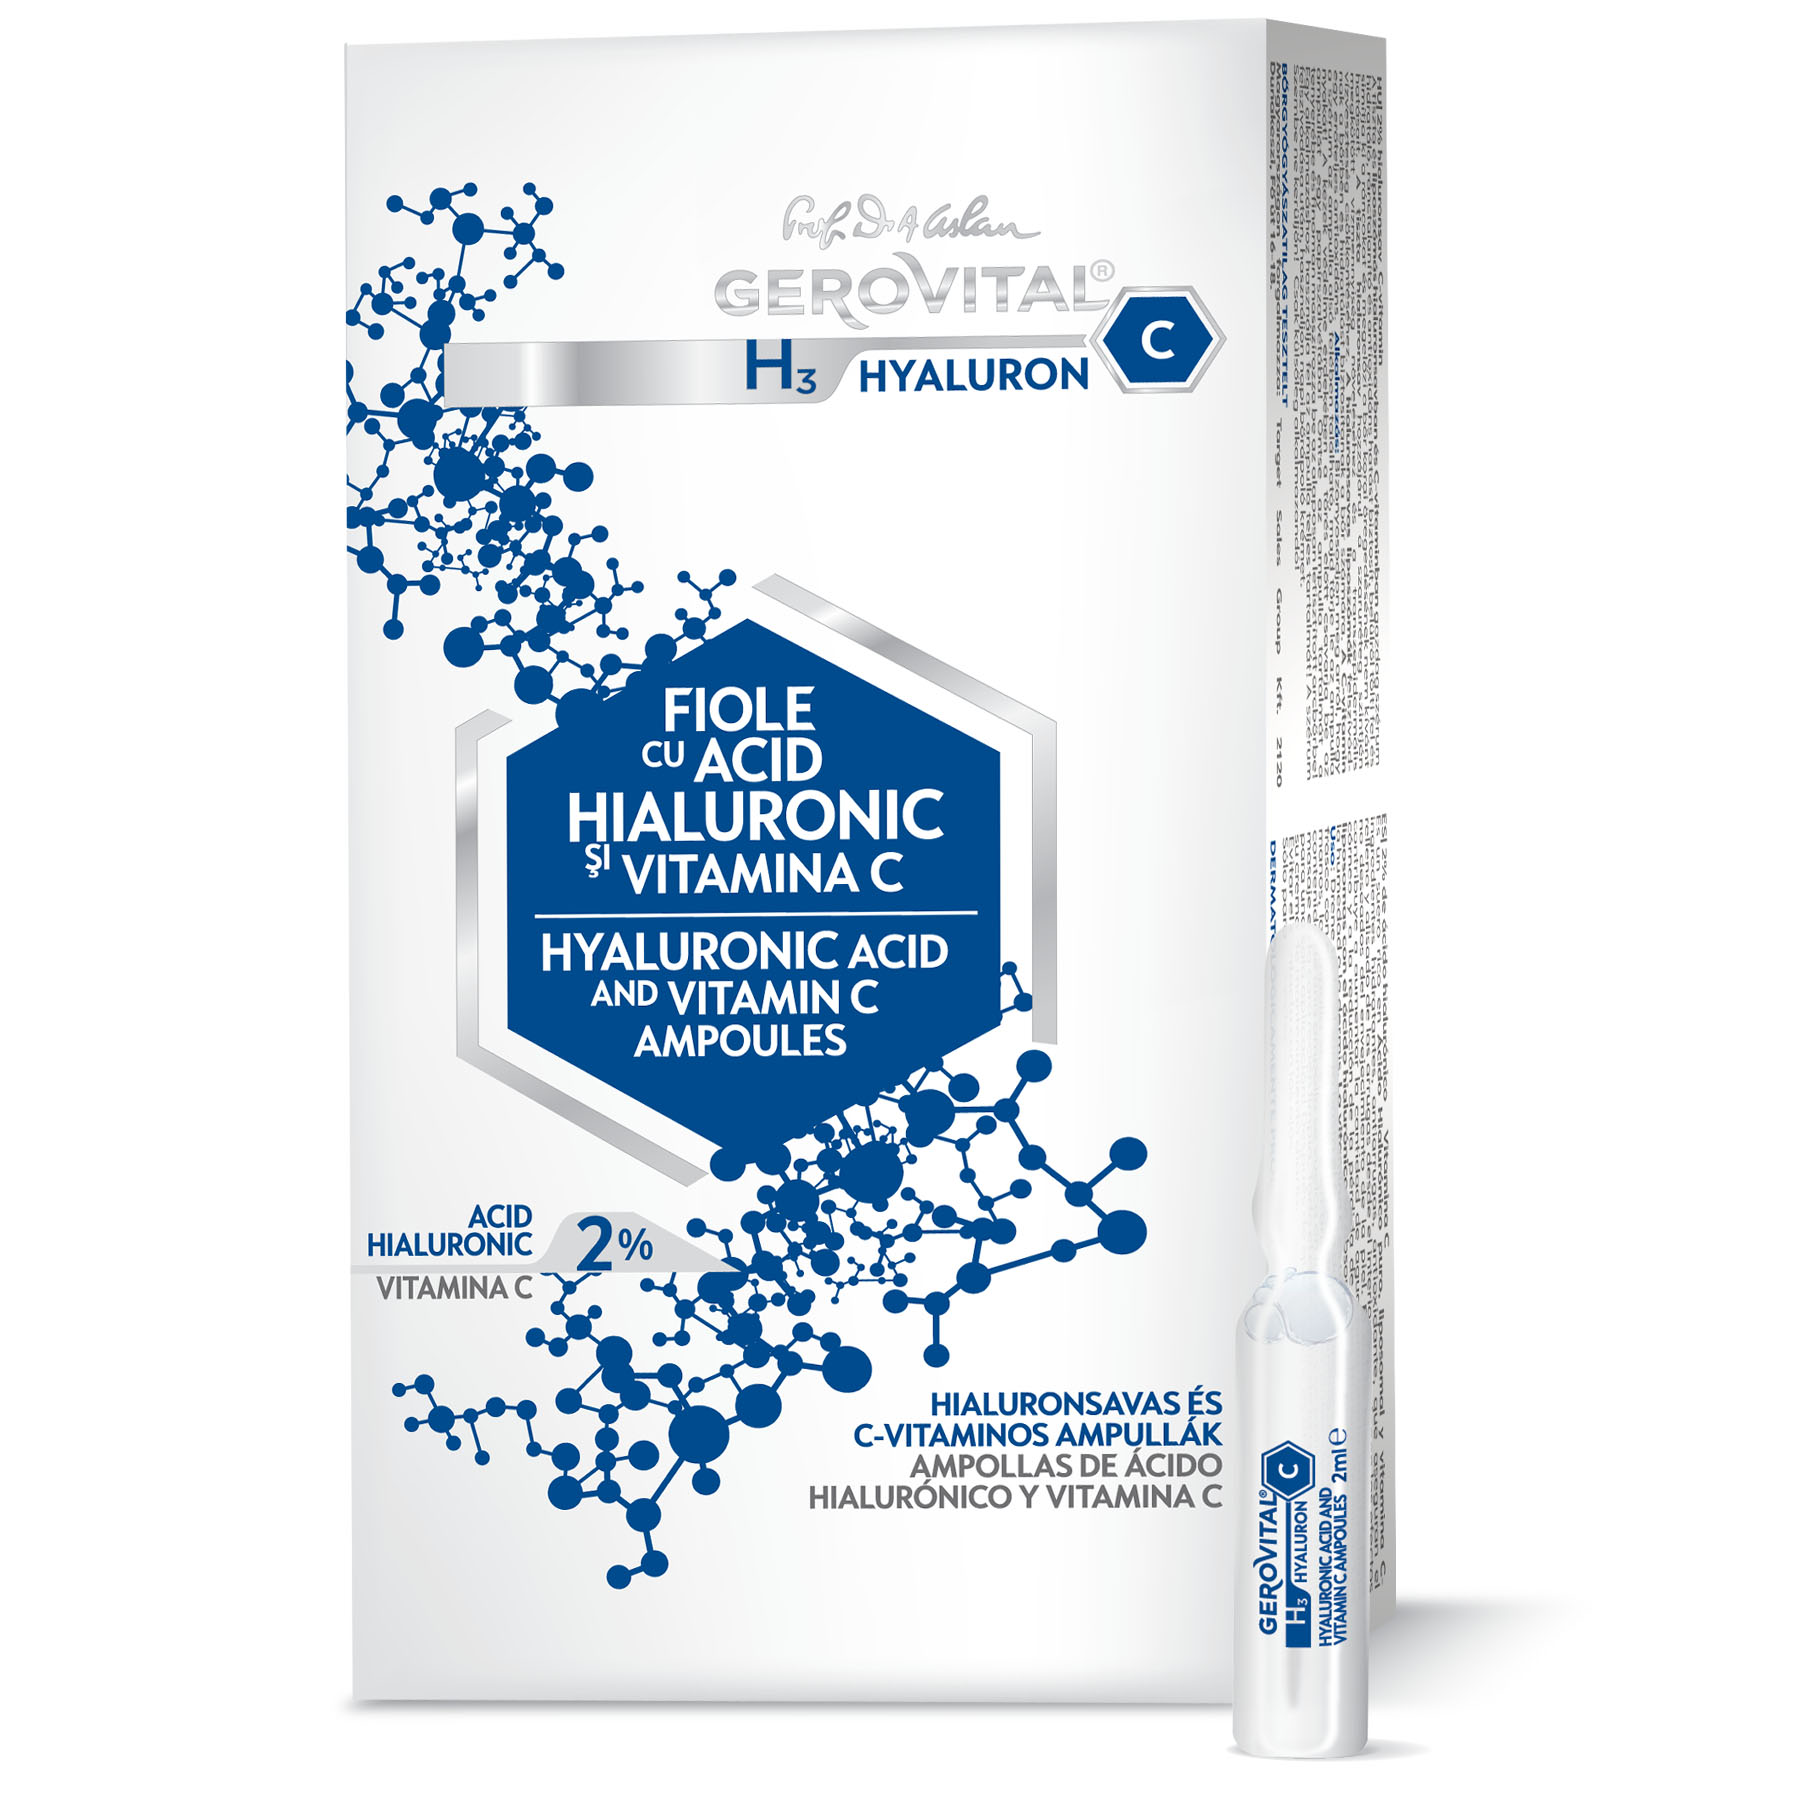 Fiole cu acid hialuronic pentru ten - Visage Acide Hyaluronique - Academie - 7 x 2 ml